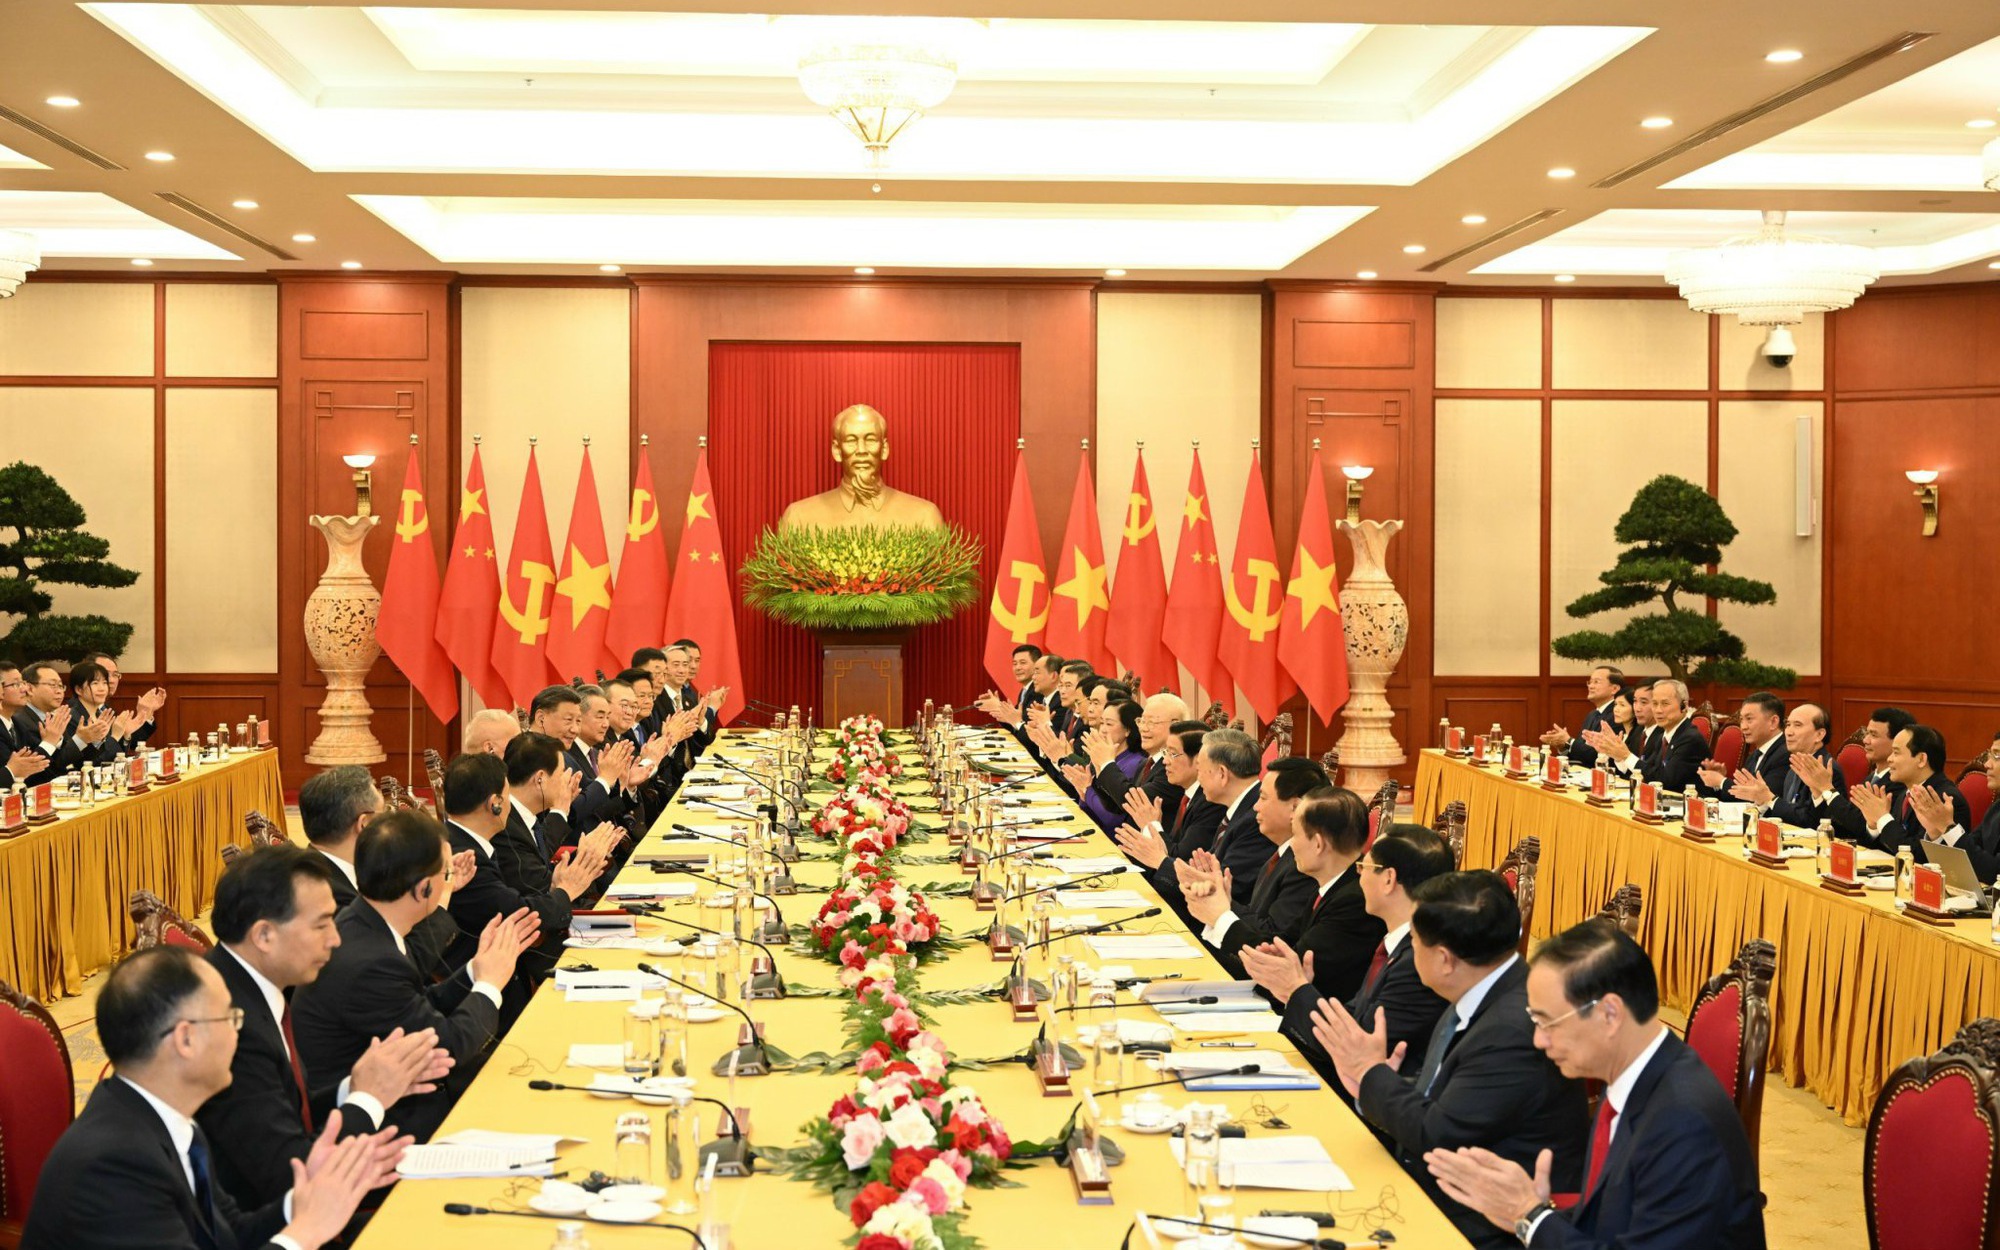 Tiếp tục làm sâu sắc và nâng tầm quan hệ đối tác hợp tác chiến lược toàn diện, xây dựng cộng đồng chia sẻ tương lai Việt Nam-Trung Quốc có ý nghĩa chiến lược